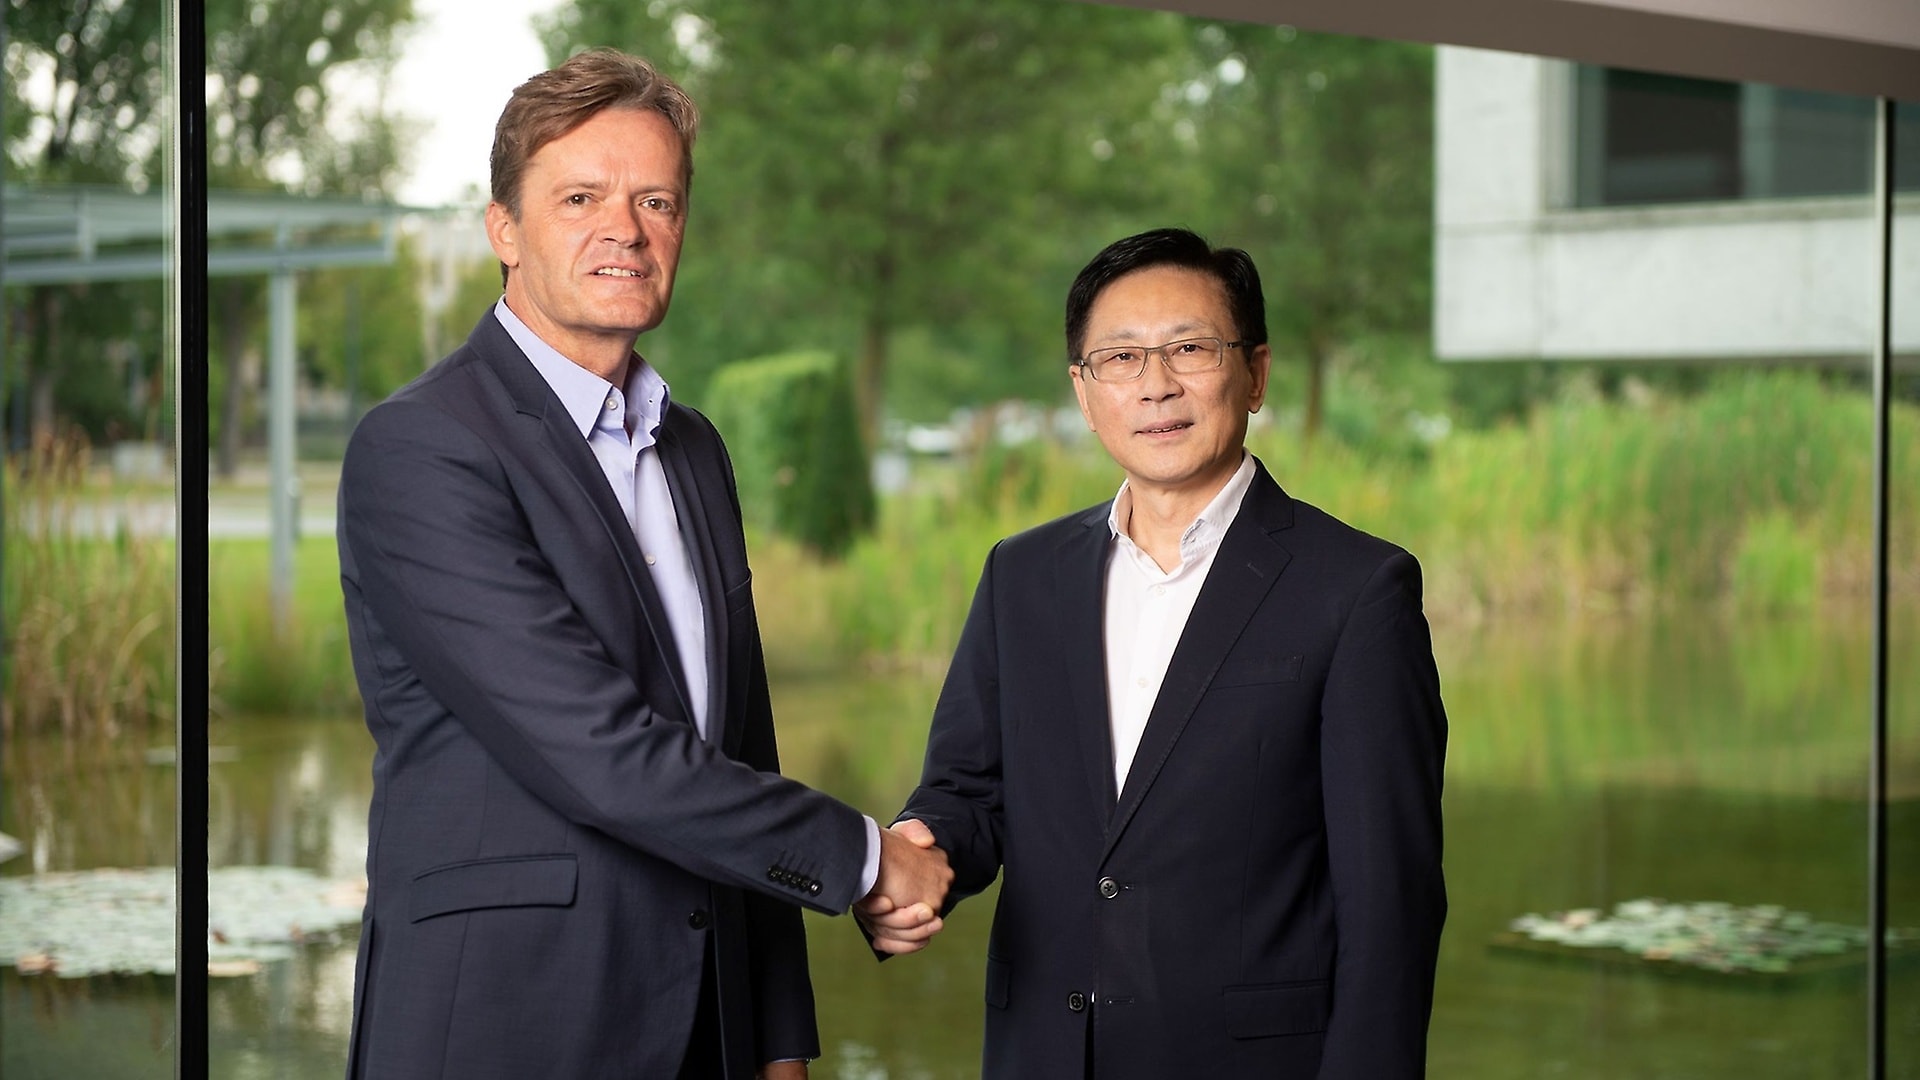 Markus Schäfer, Mitglied des Vorstandes der Daimler AG verantwortlich für Konzernforschung & Mercedes-Benz Cars Entwicklung und Dr. Yu Wang, Gründer und CEO, Farasis Energy (Ganzhou) Co., Ltd.